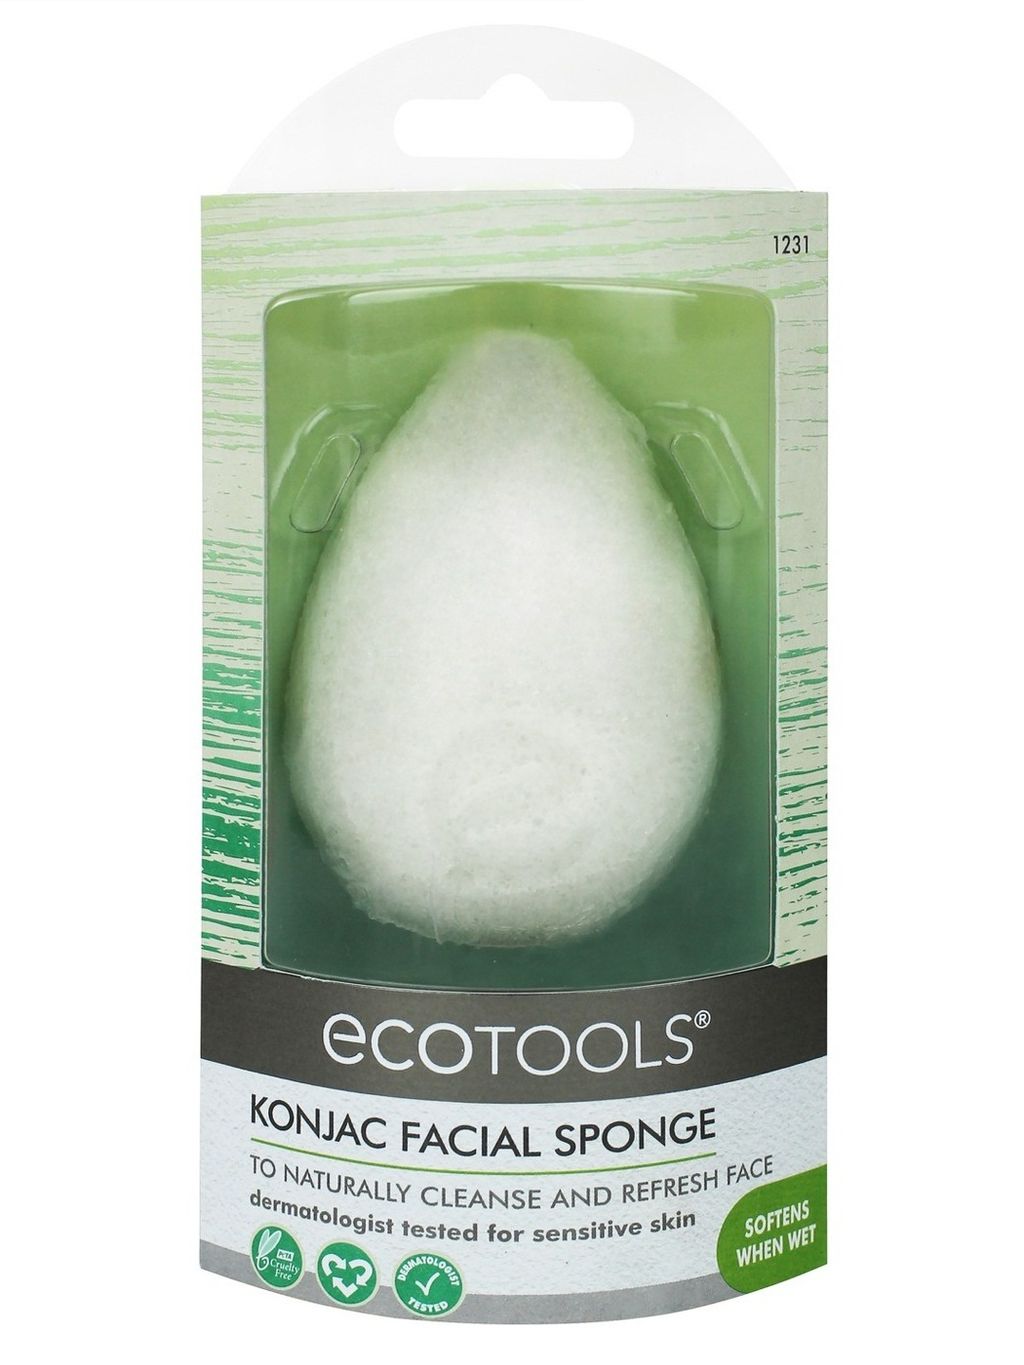 EcoTools Pure Complexion (Konjac) Facial Sponge - Sensitive Skin.jpg